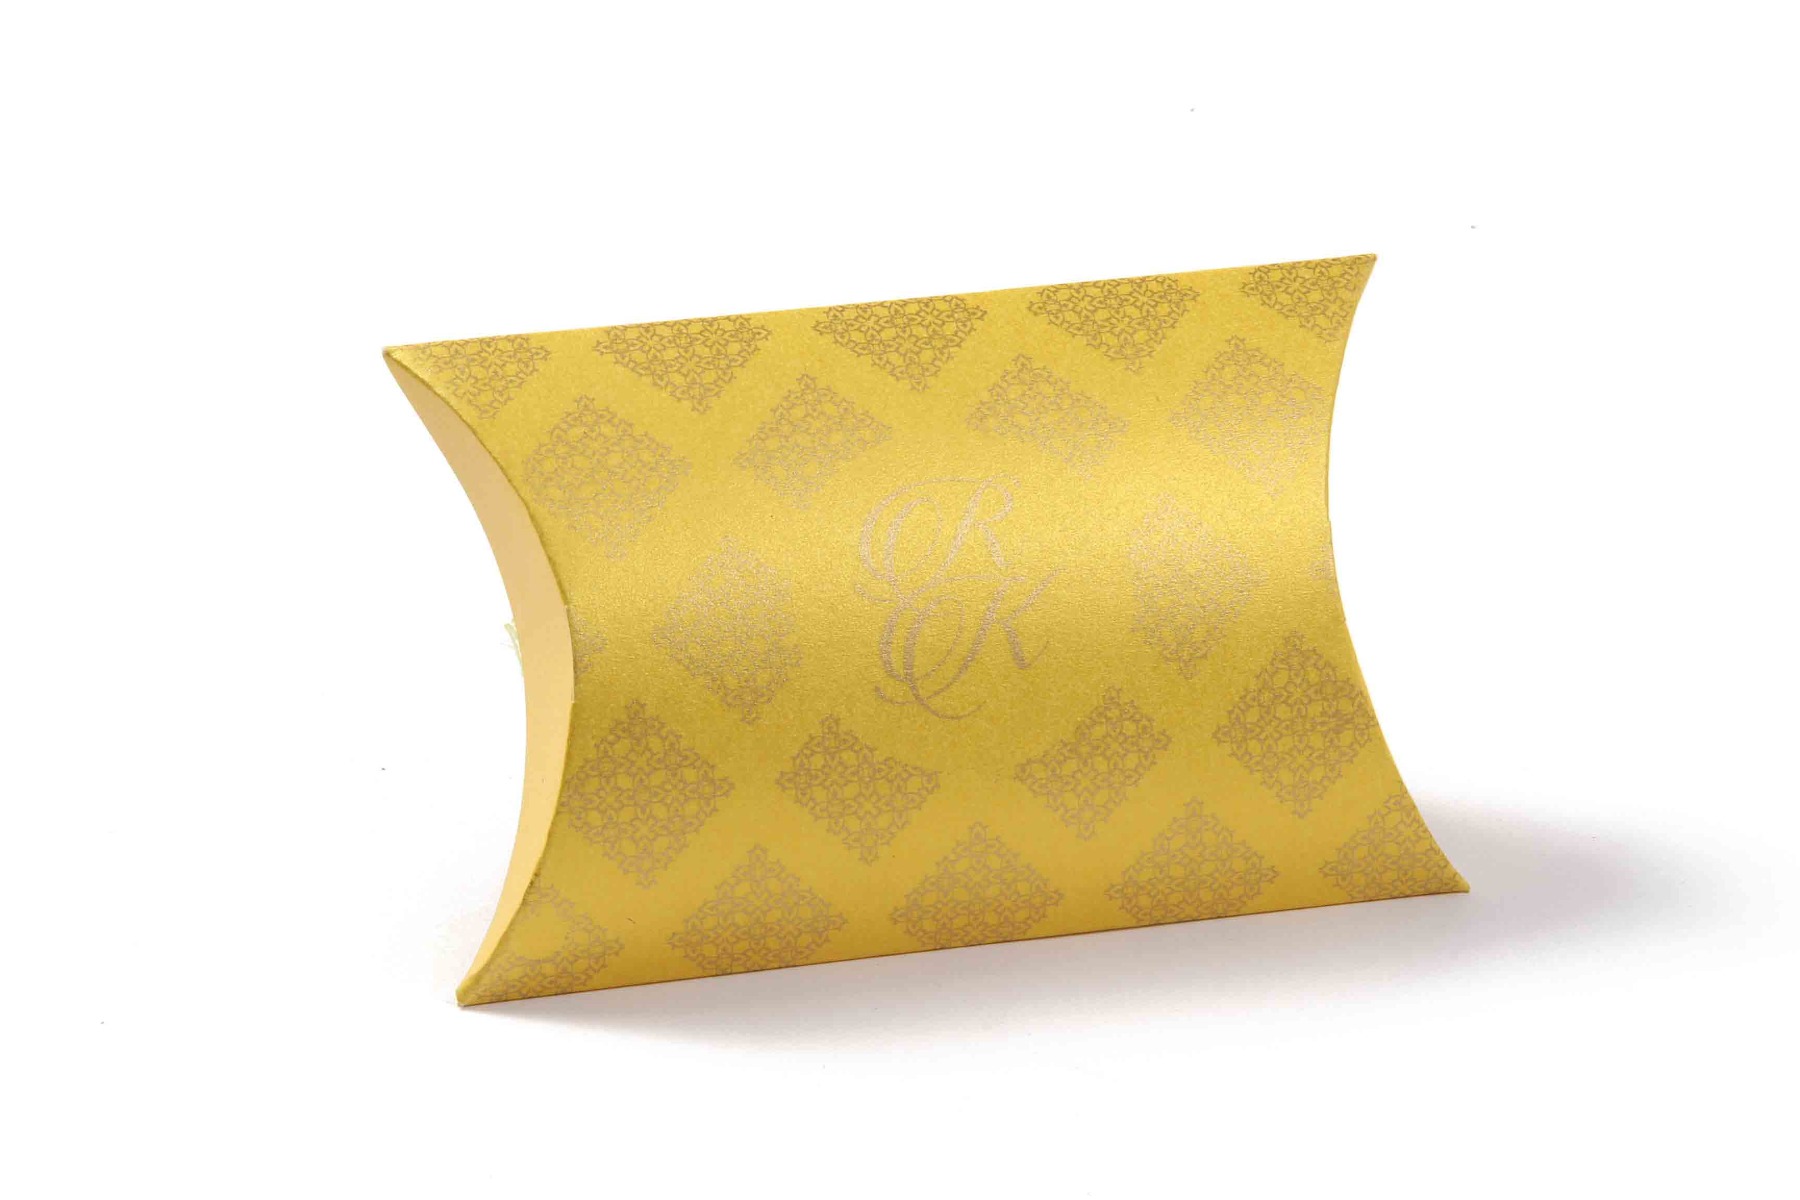 Pillow Favor Box No 9 - Yellow-8672